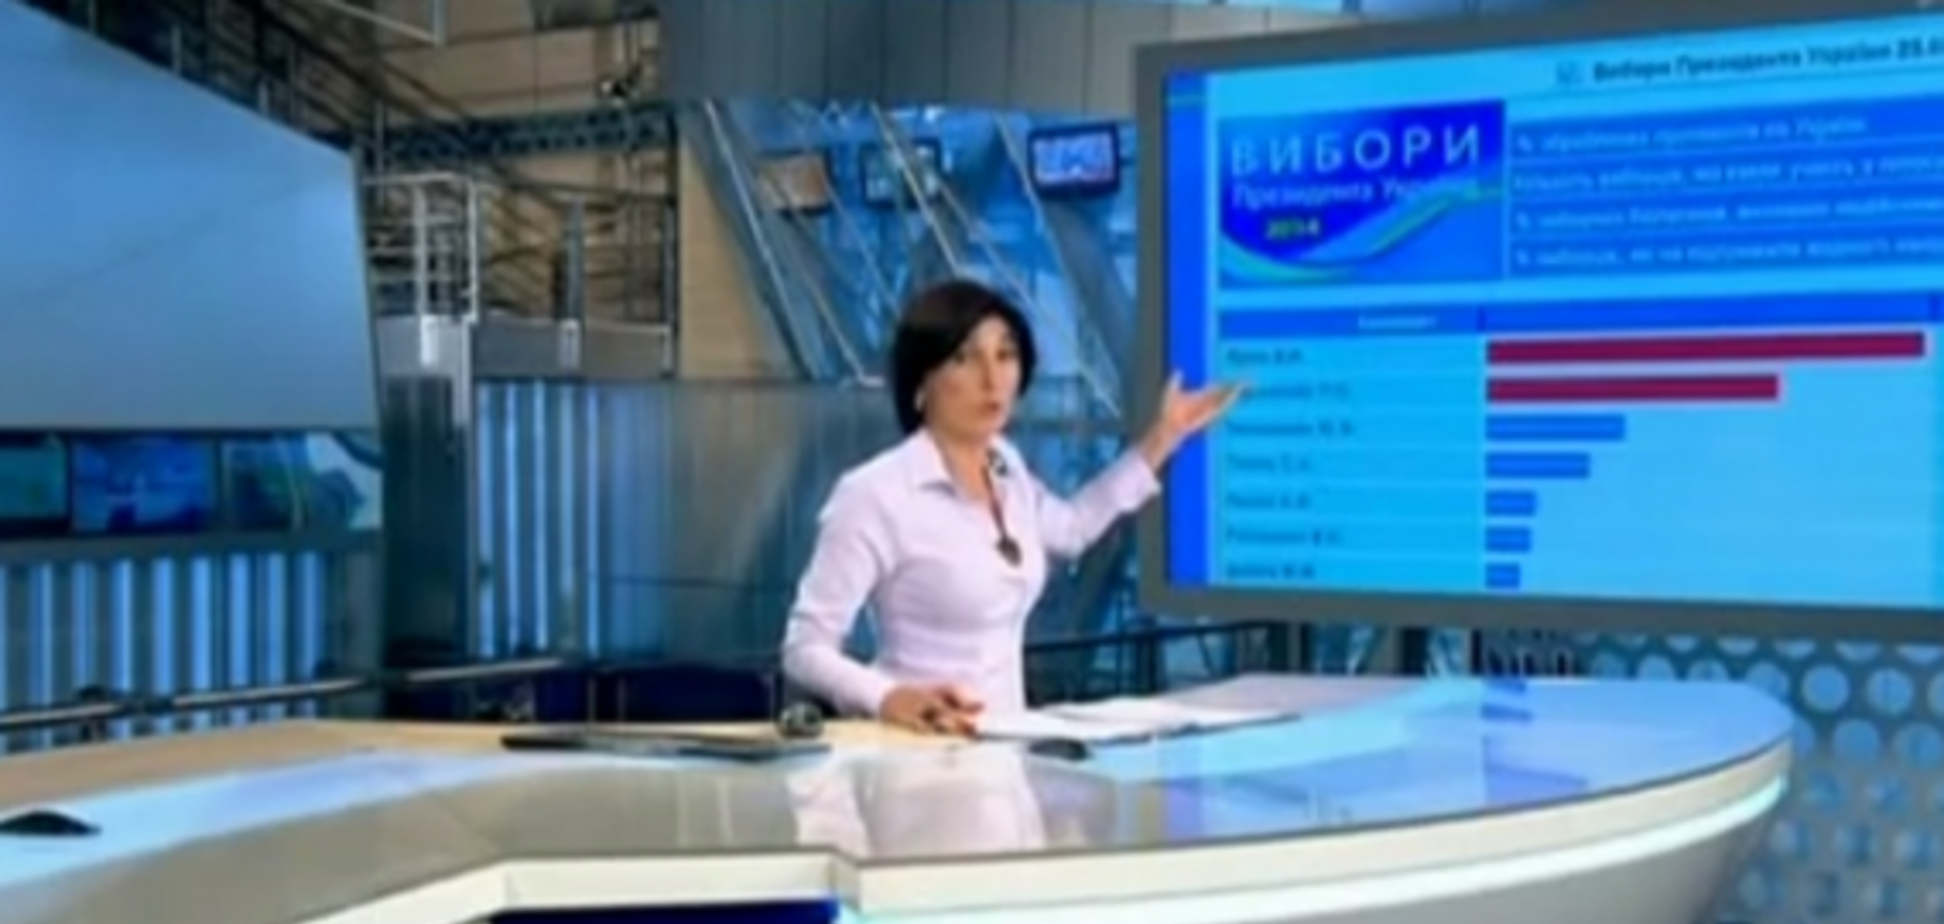 Первый канал РФ соврал, что в Украине победил Ярош. Видеофакт